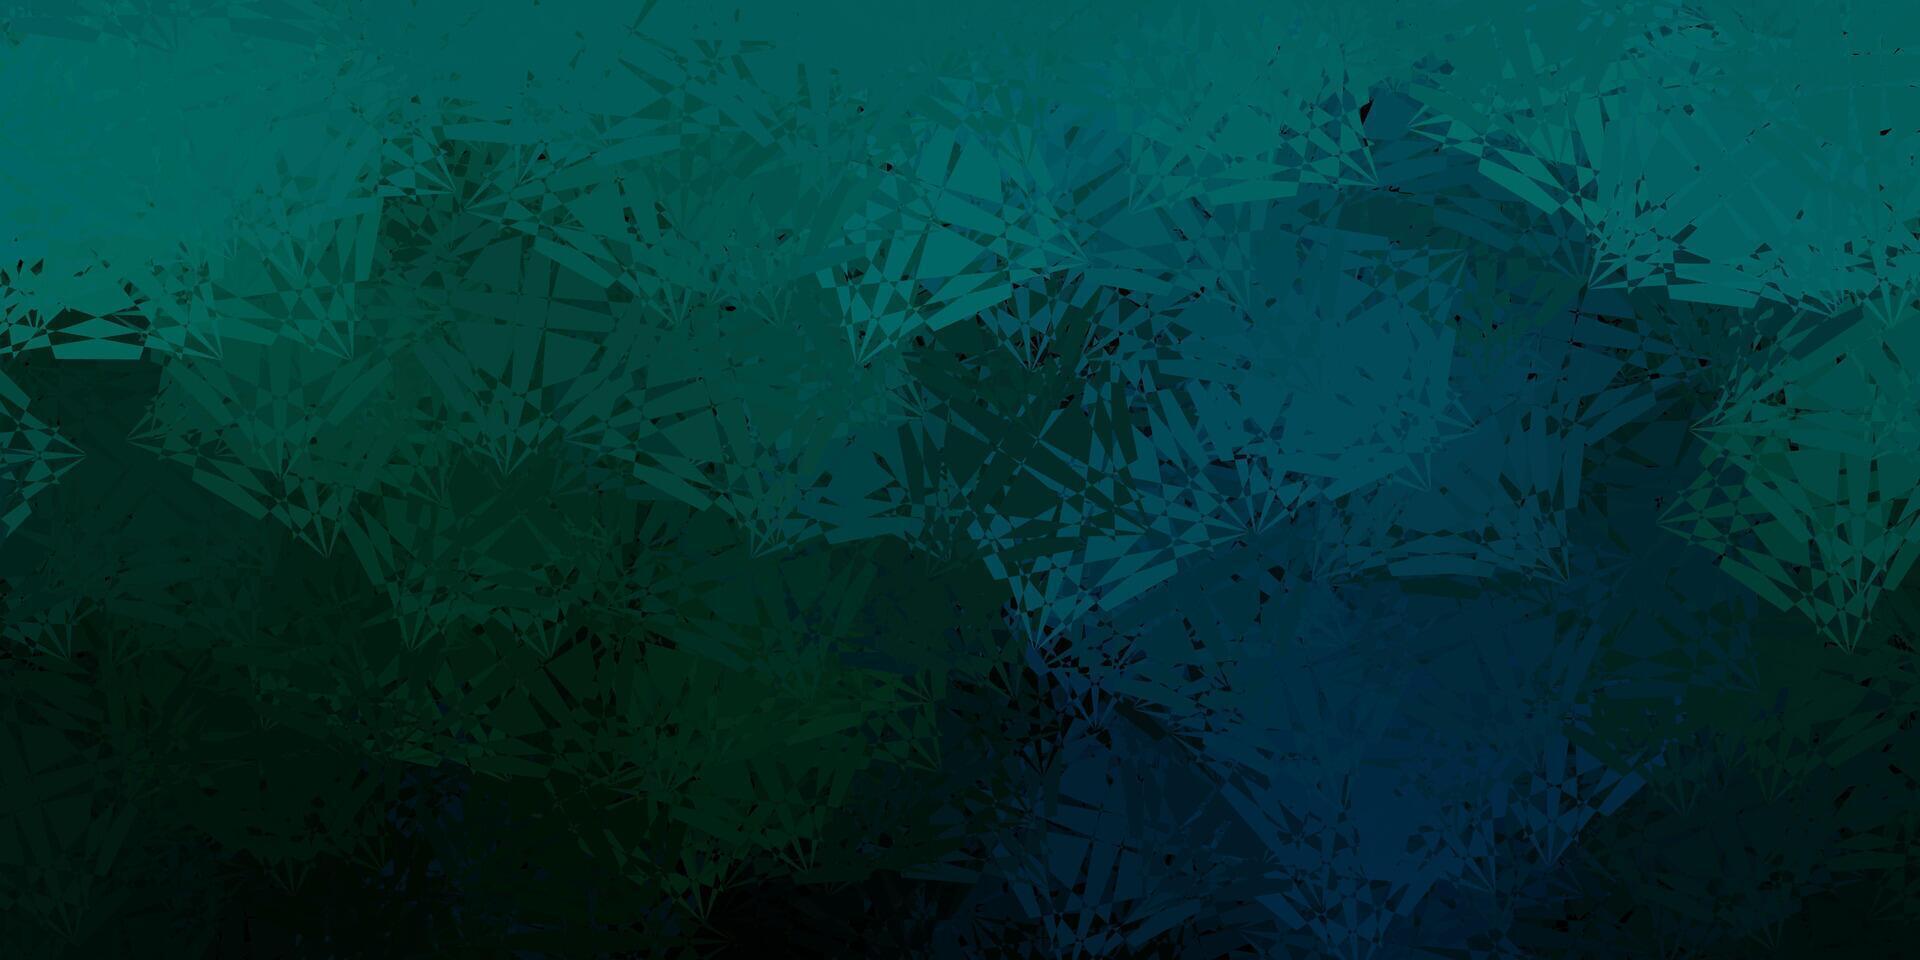 sfondo vettoriale verde scuro con forme poligonali.